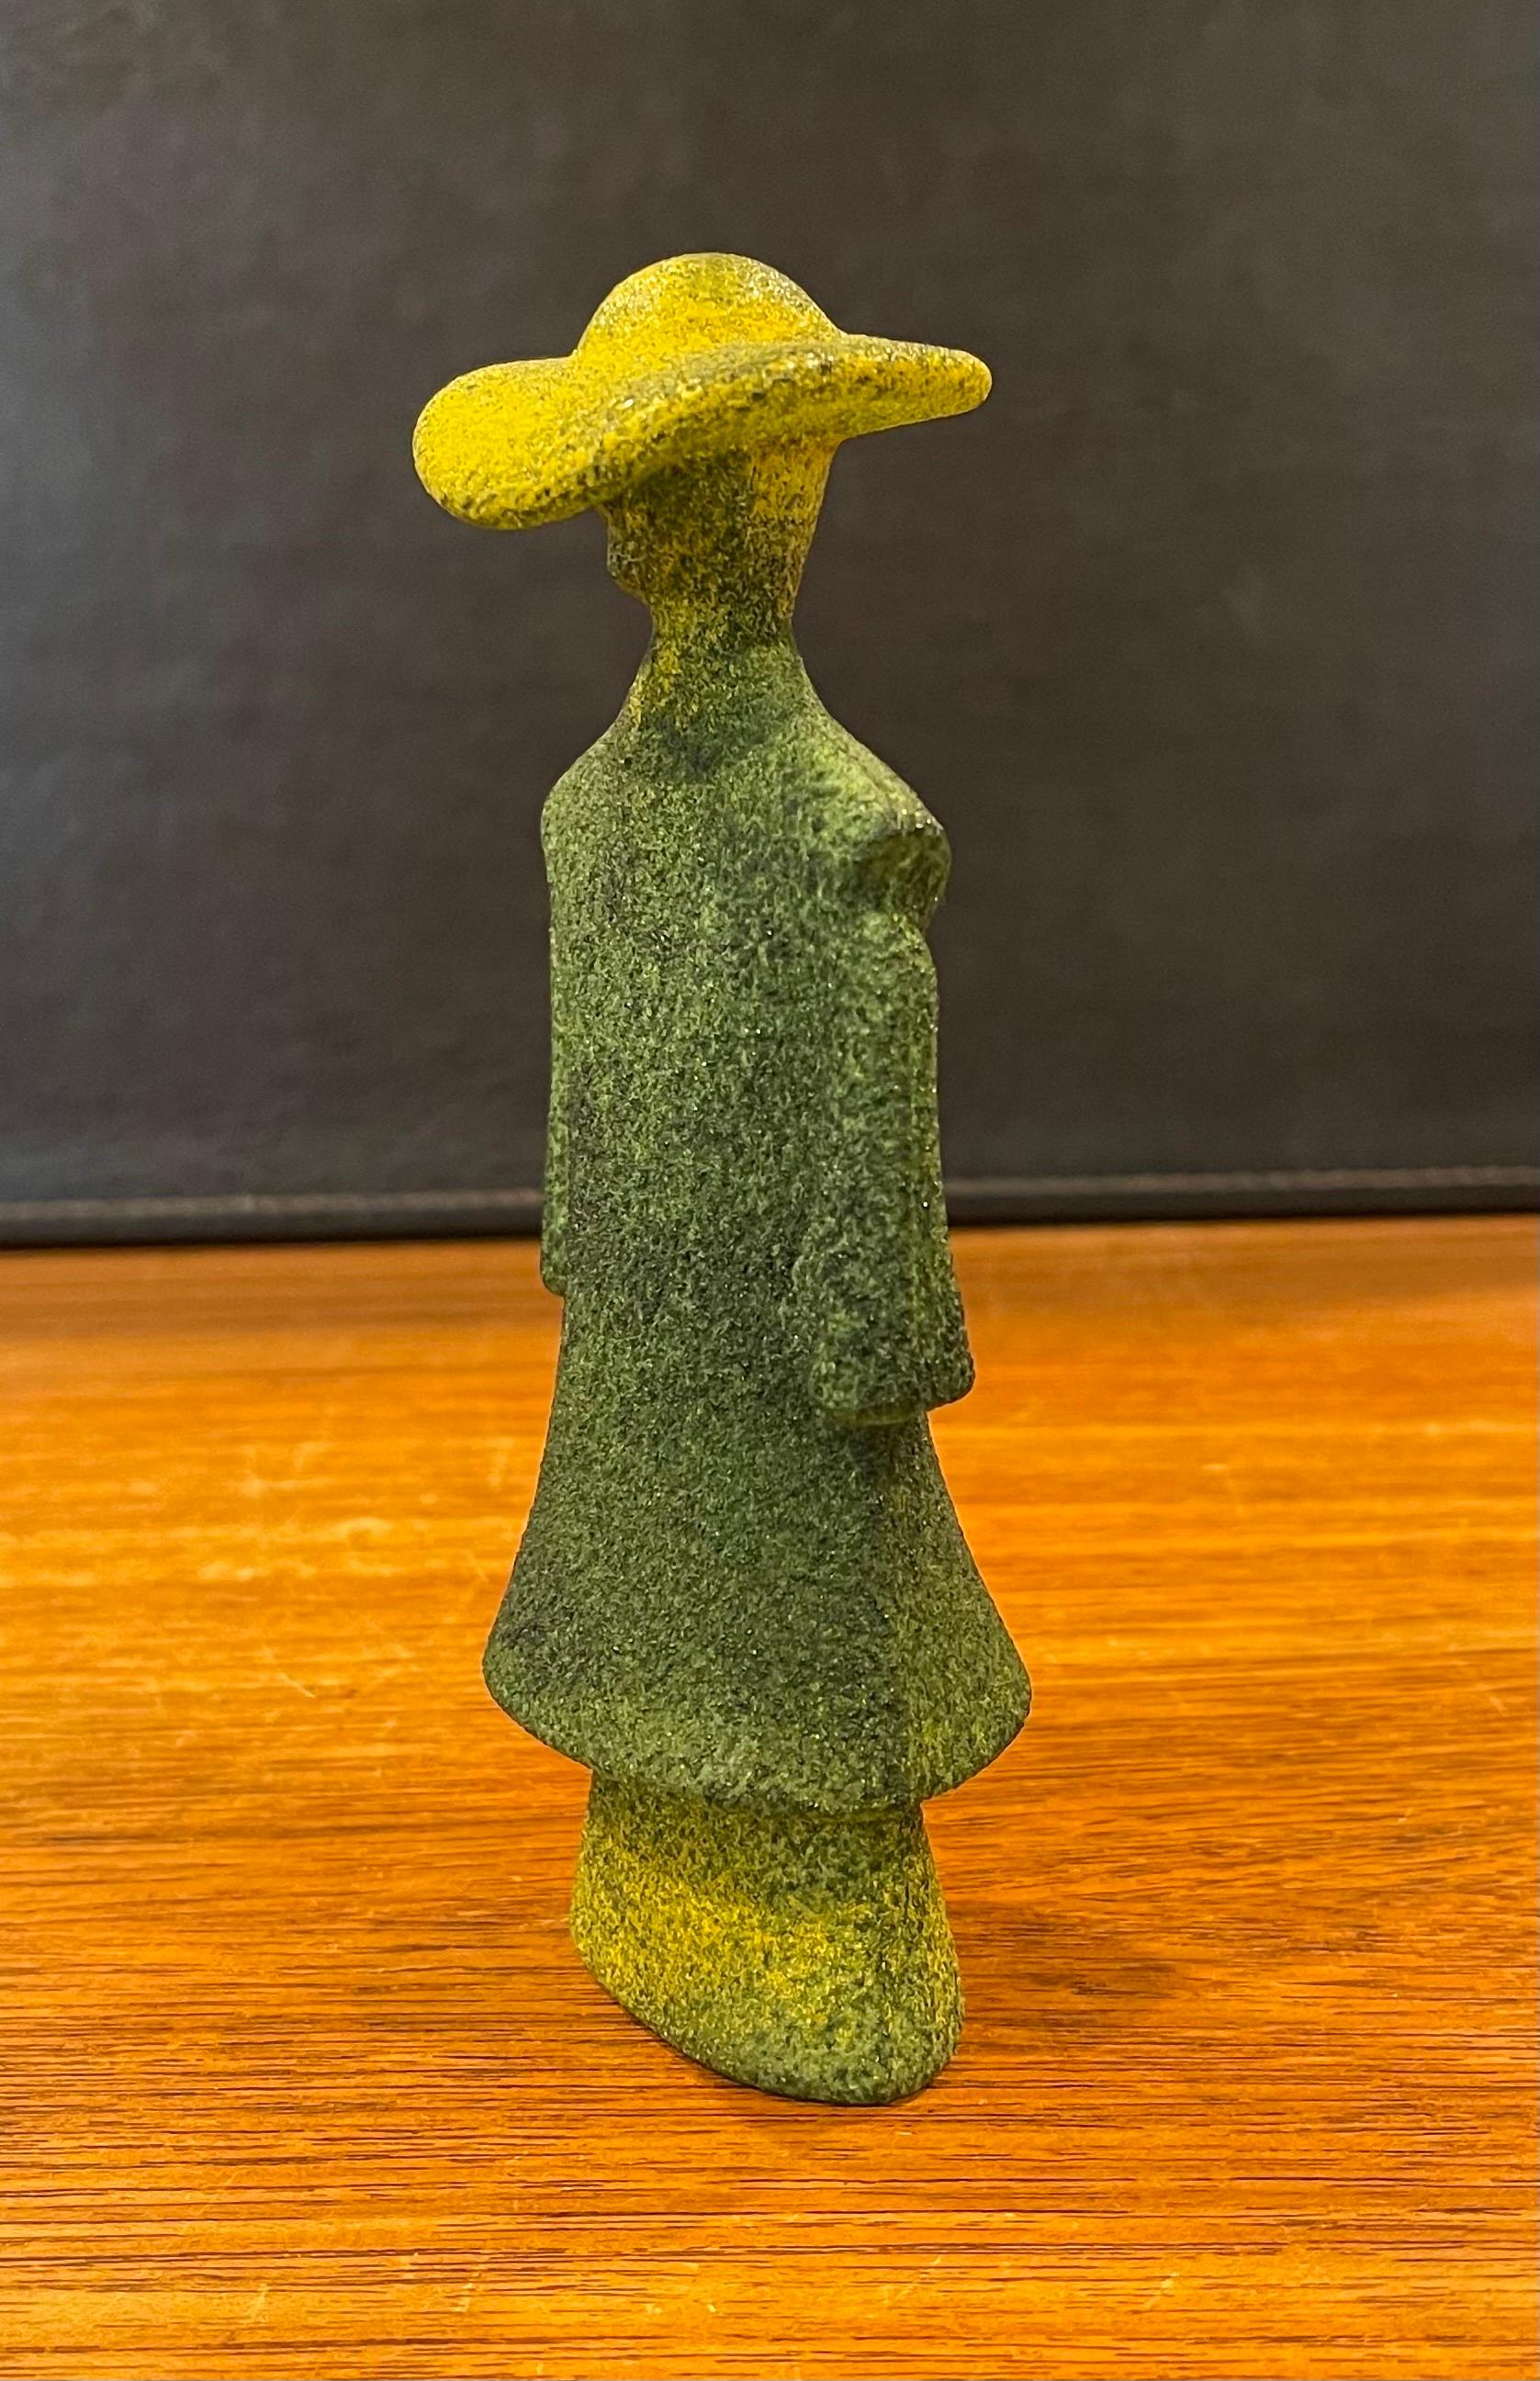 Poncho Green Art Glass Catwalk Sculpture by Kjell Engman for Kosta Boda Sweden For Sale 2